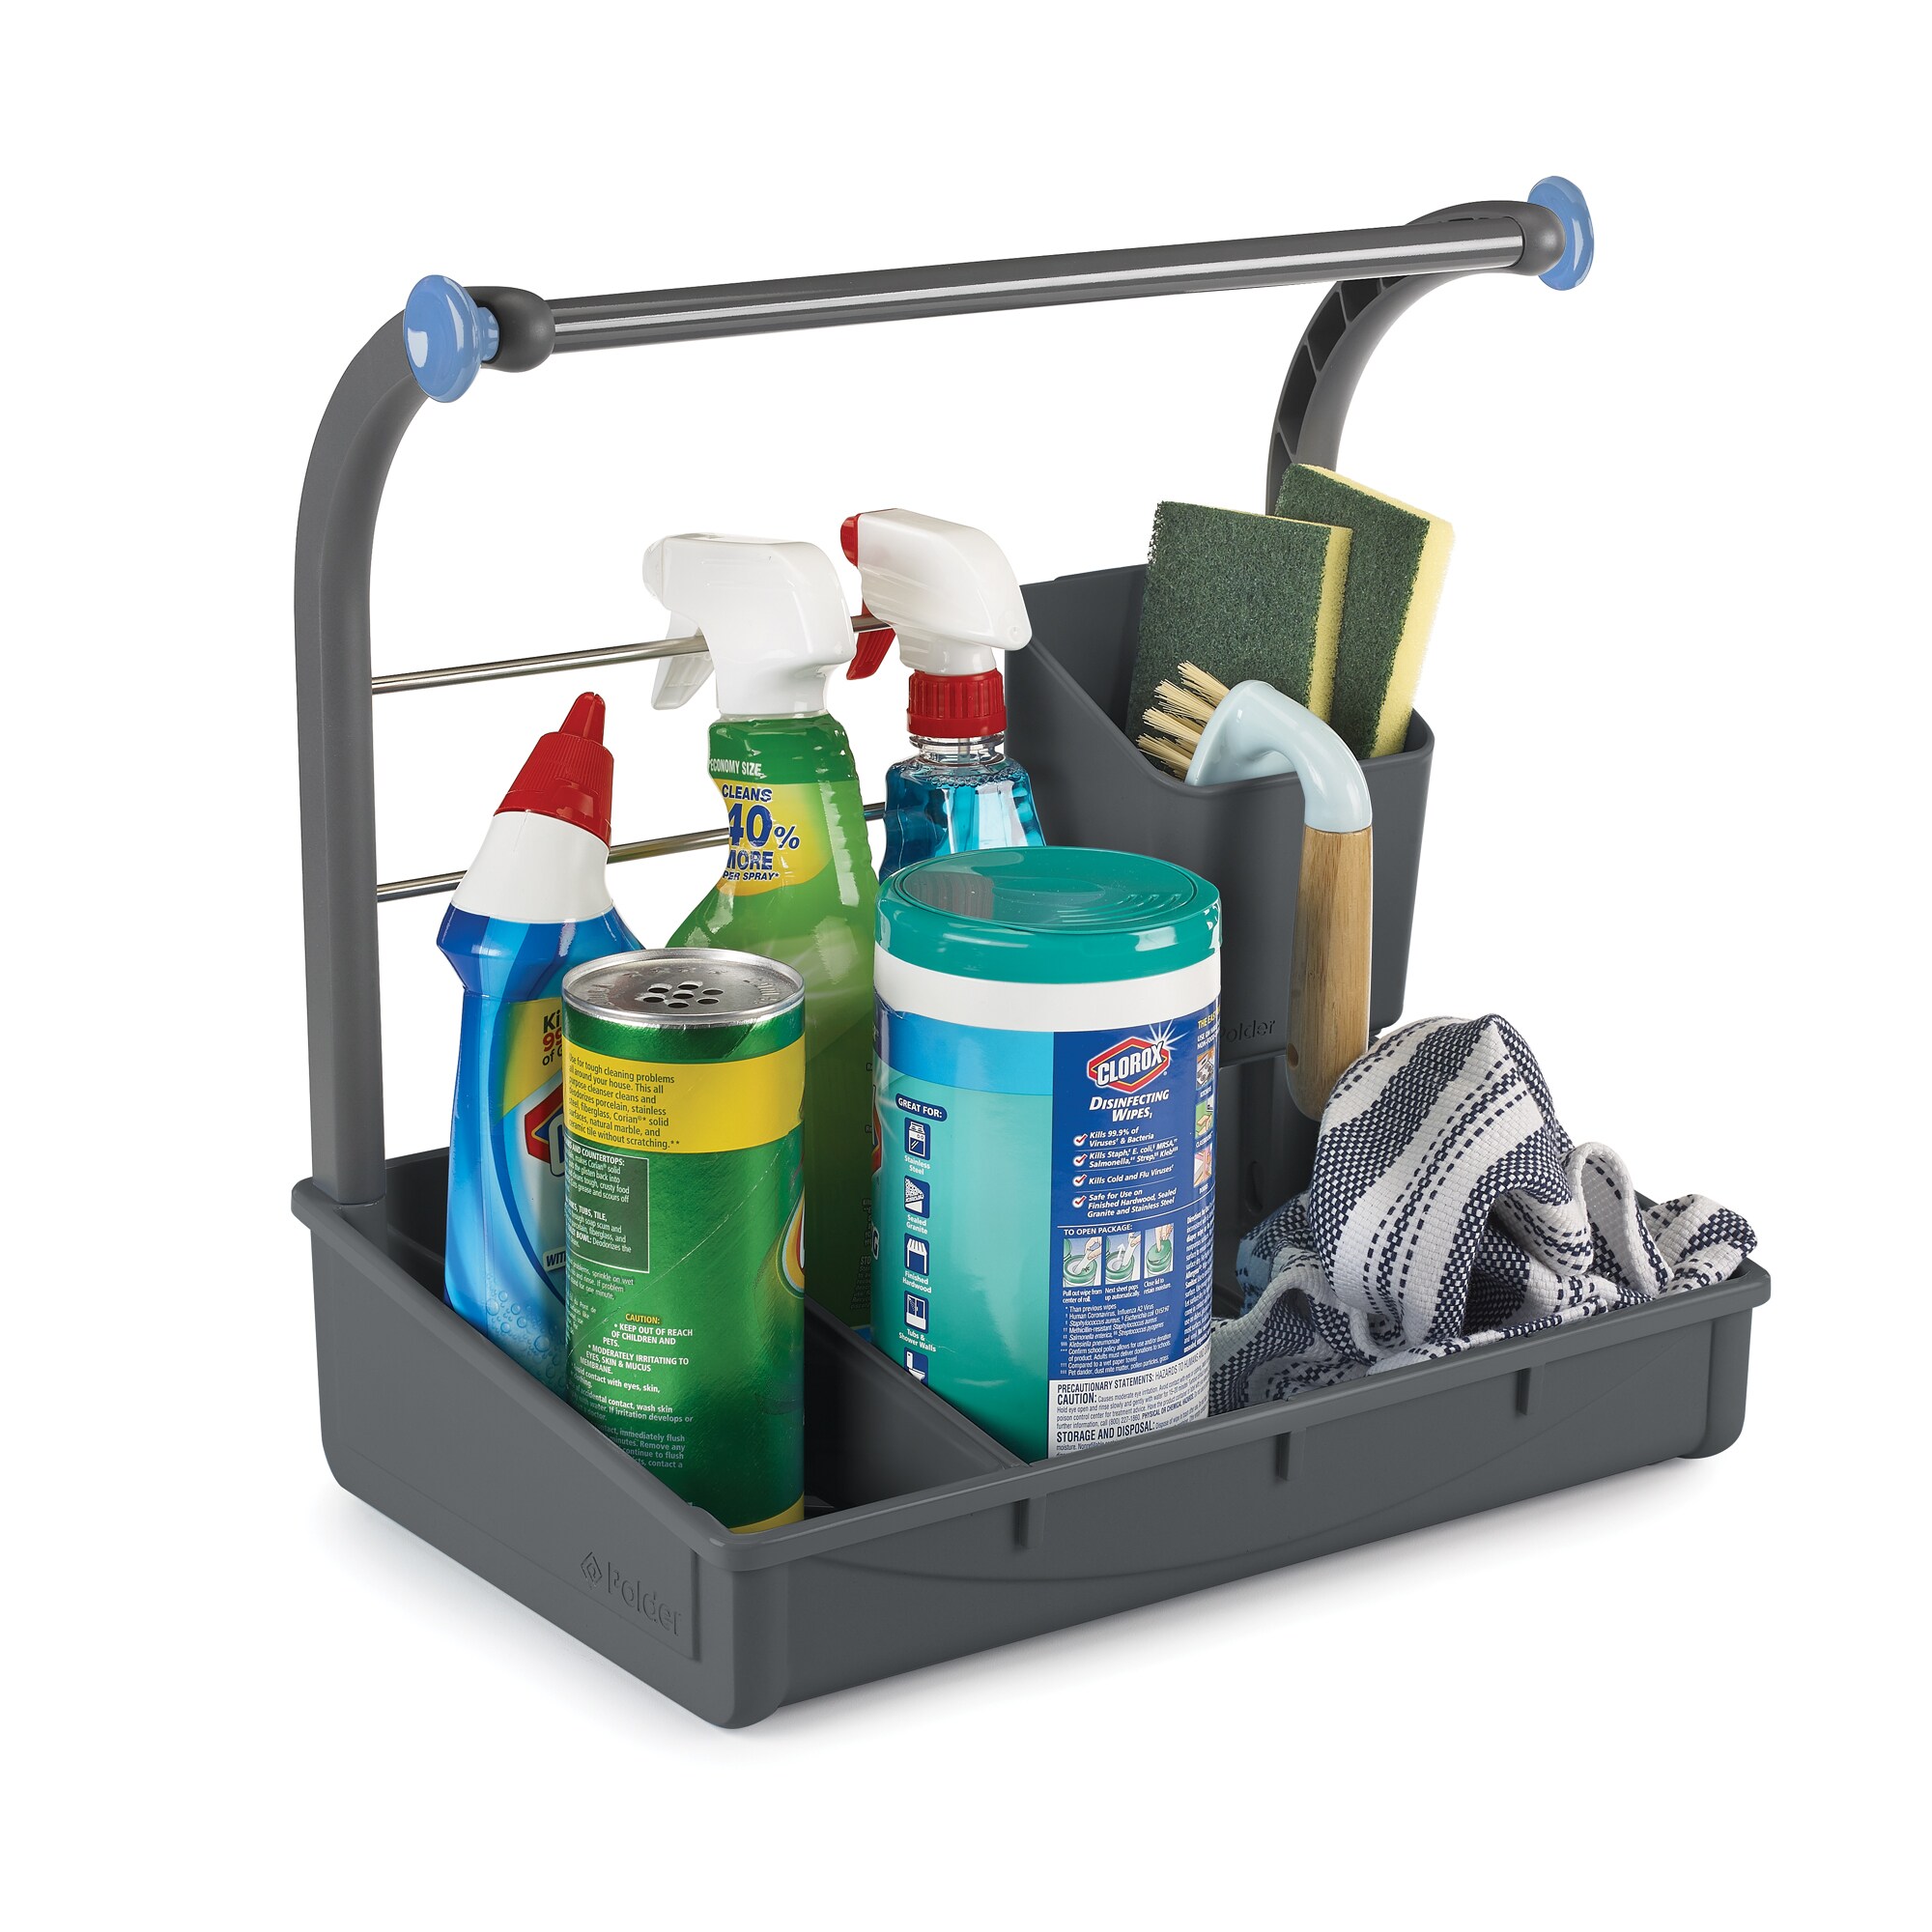 Gray Polder Under Sink Cleaning Supplies Organizer/Storage Caddy 